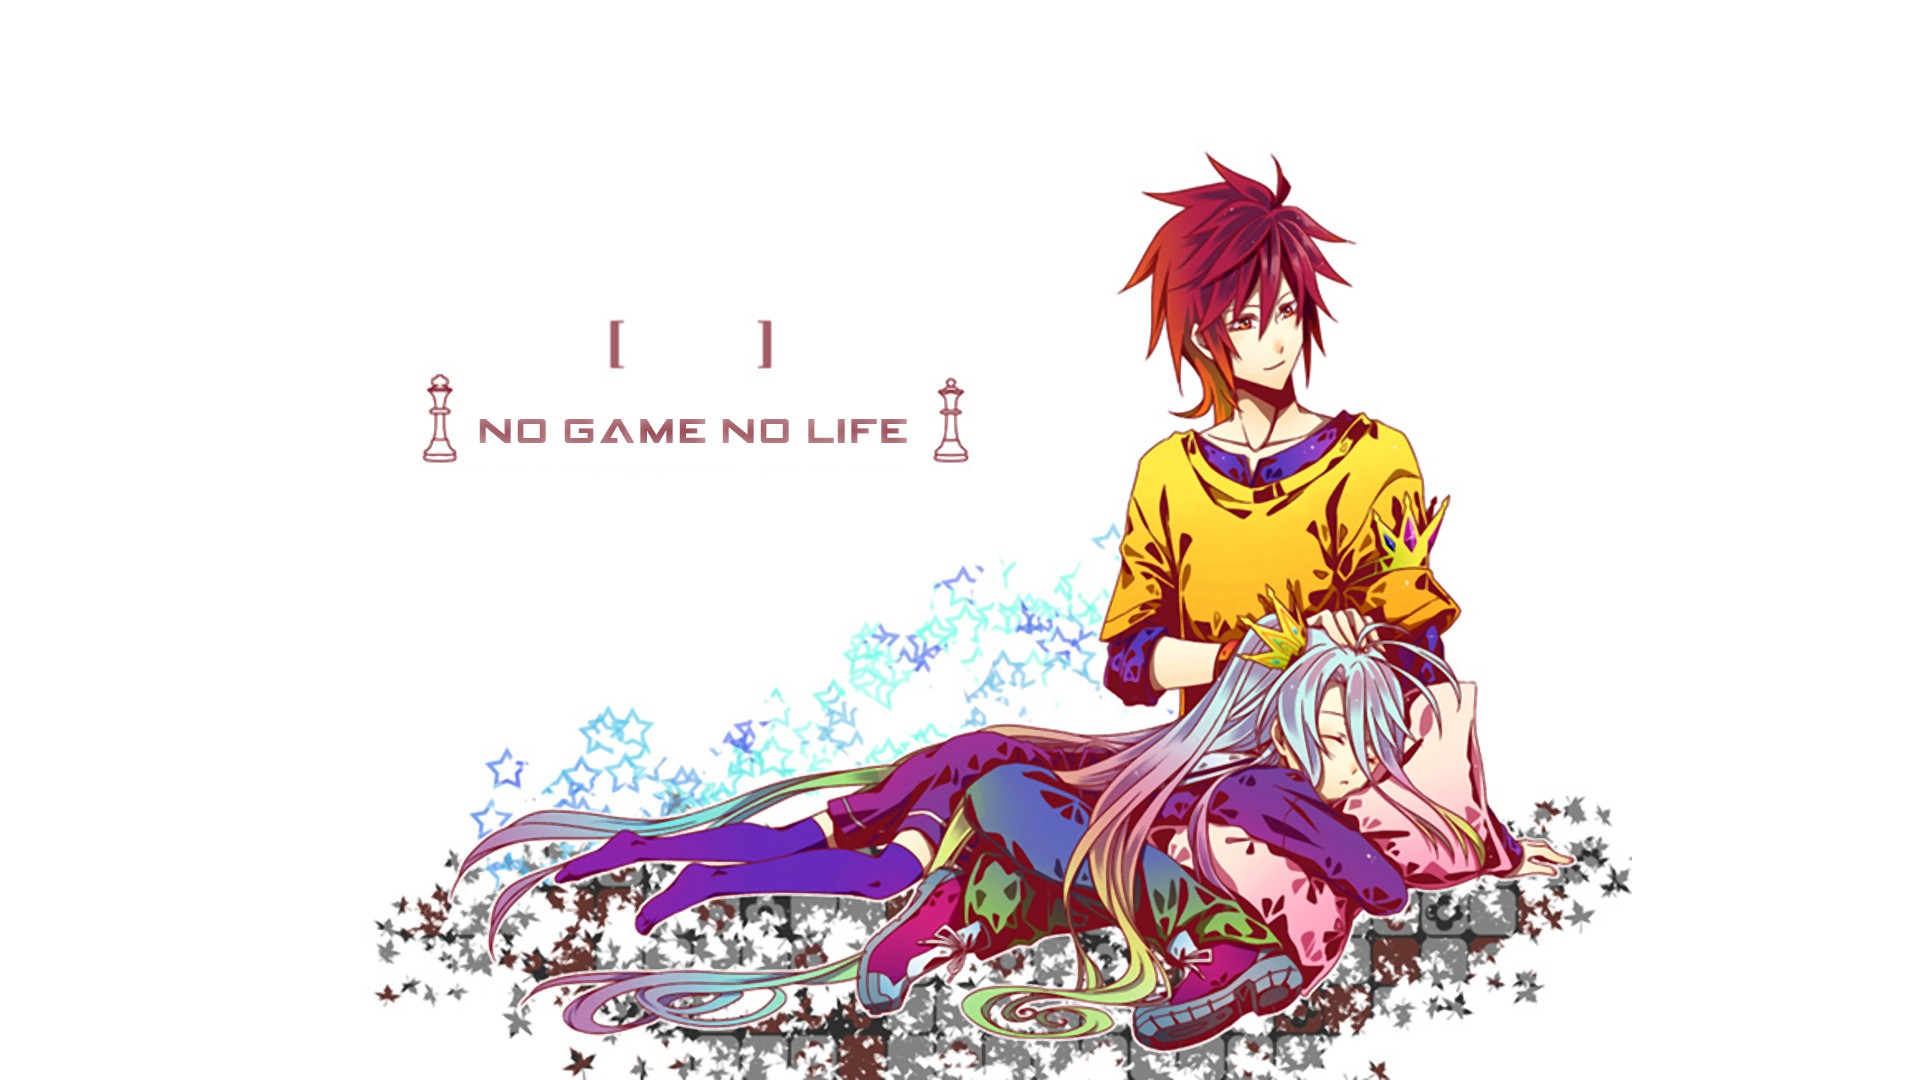 Anime 1920x1080 anime No Game No Life Shiro (No Game No Life) Sora (No Game No Life) anime girls simple background white background